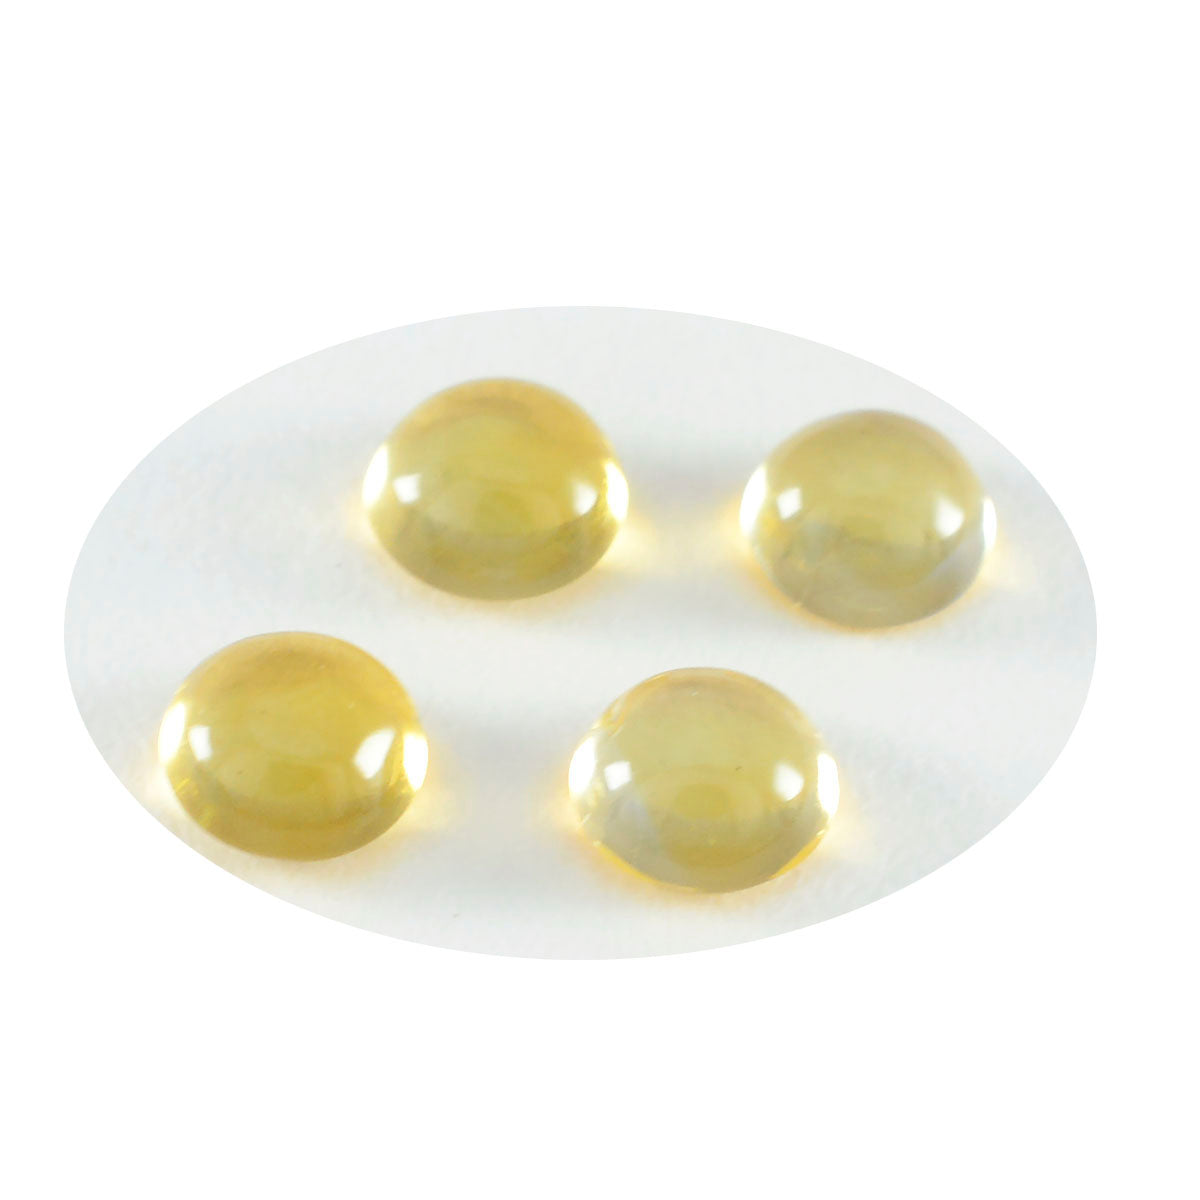 Riyogems 1PC gele citrien cabochon 11x11 mm ronde vorm schoonheid kwaliteit losse edelsteen